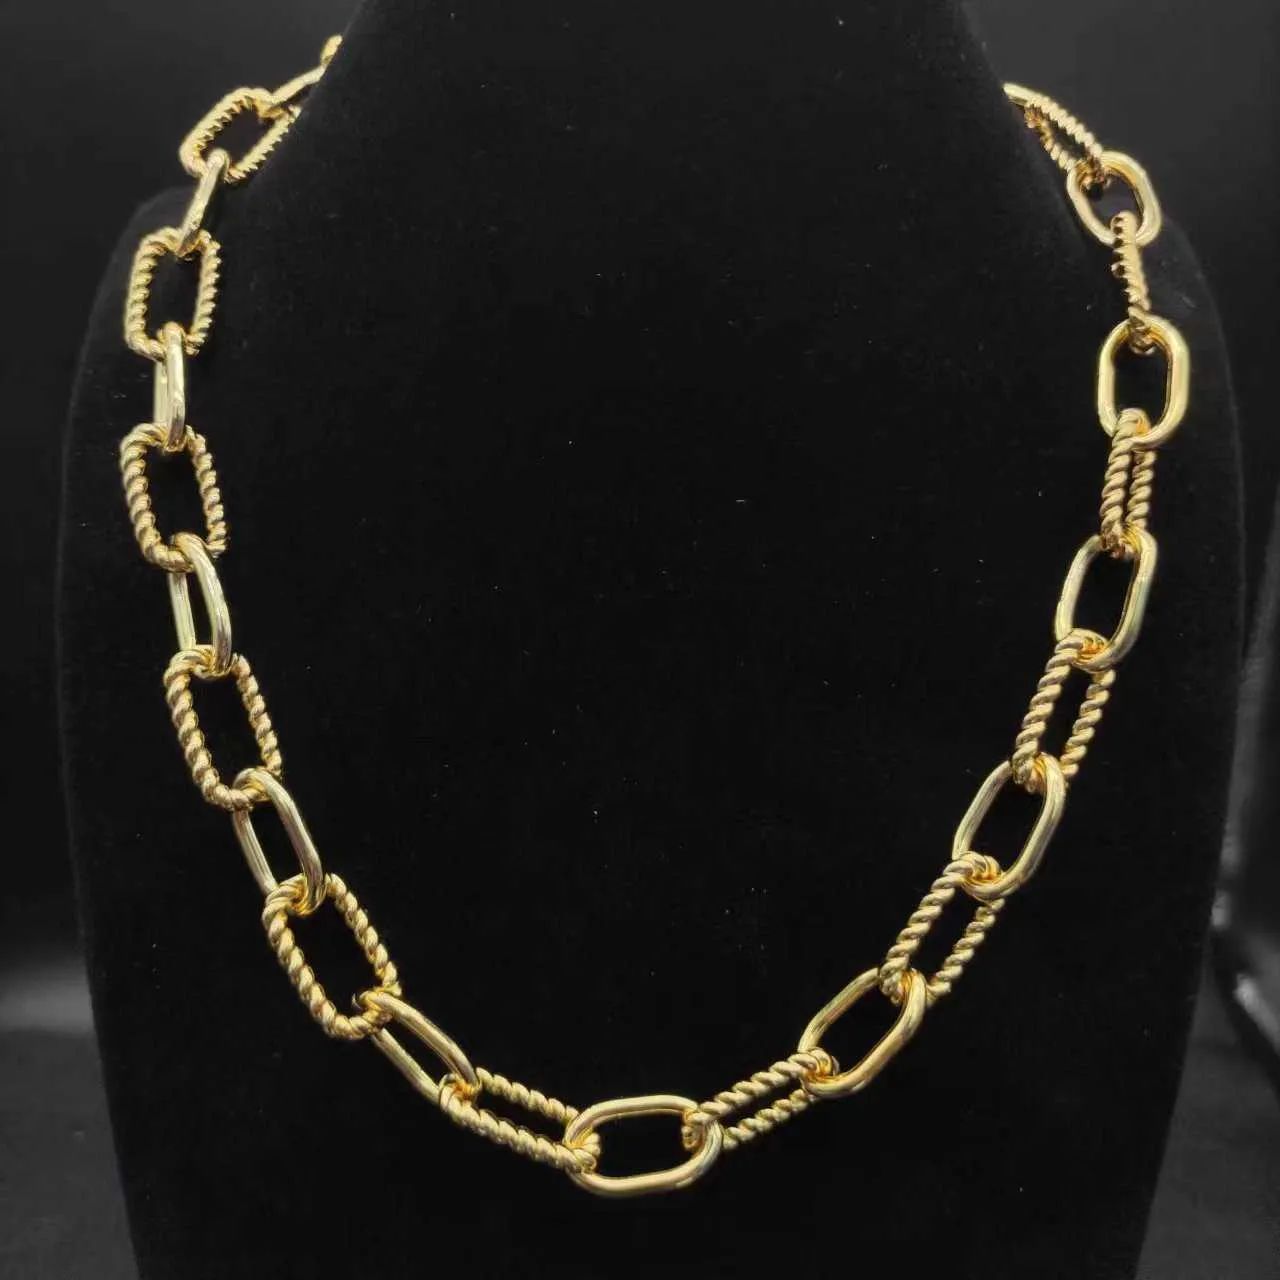 66 gold necklace--46cm